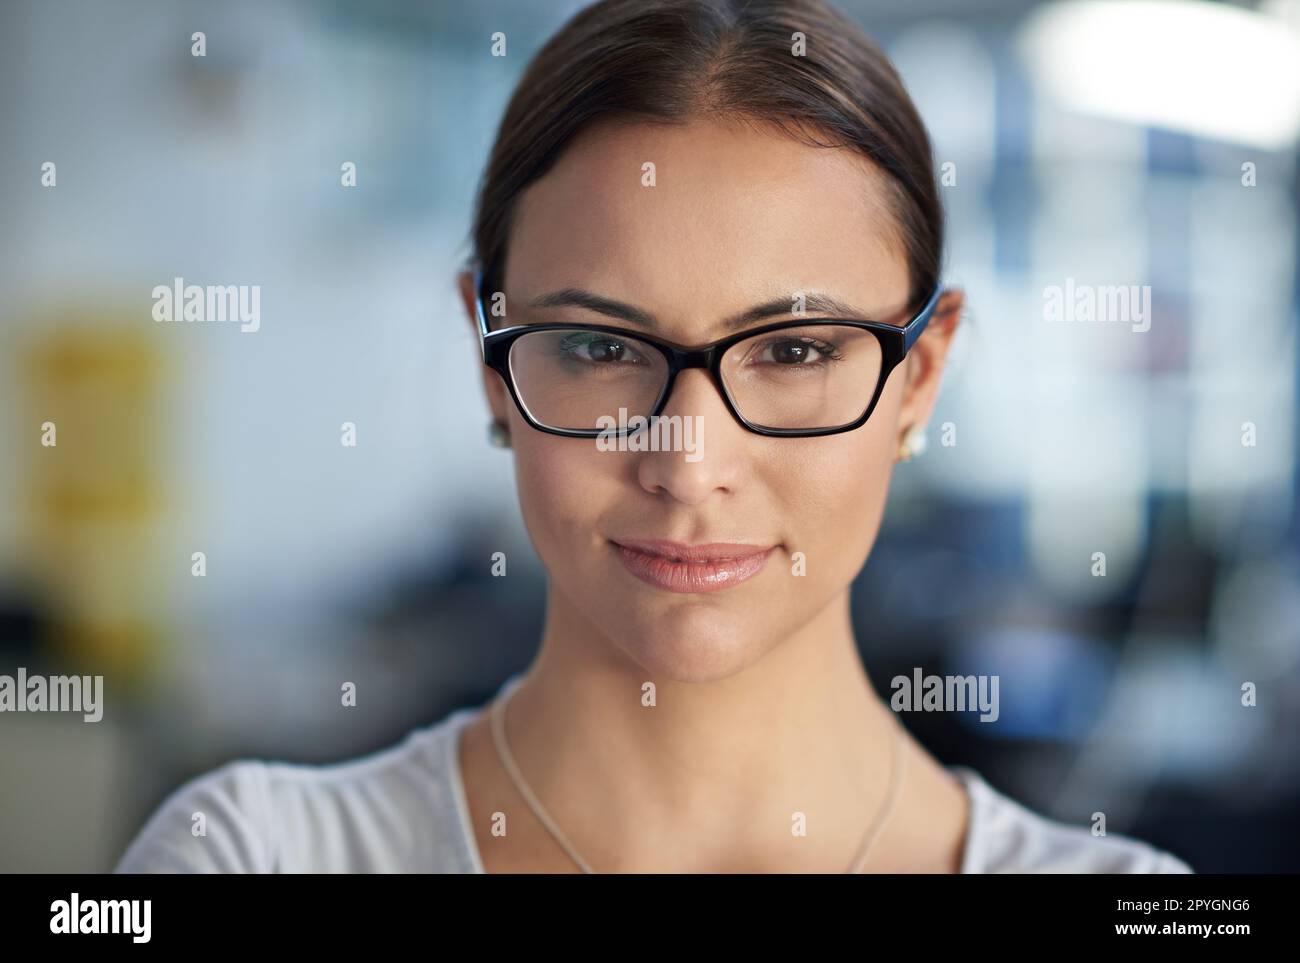 Des conseils fiables d'une source directe. Gros plan court d'une femme portant des lunettes et regardant directement l'appareil photo. Banque D'Images